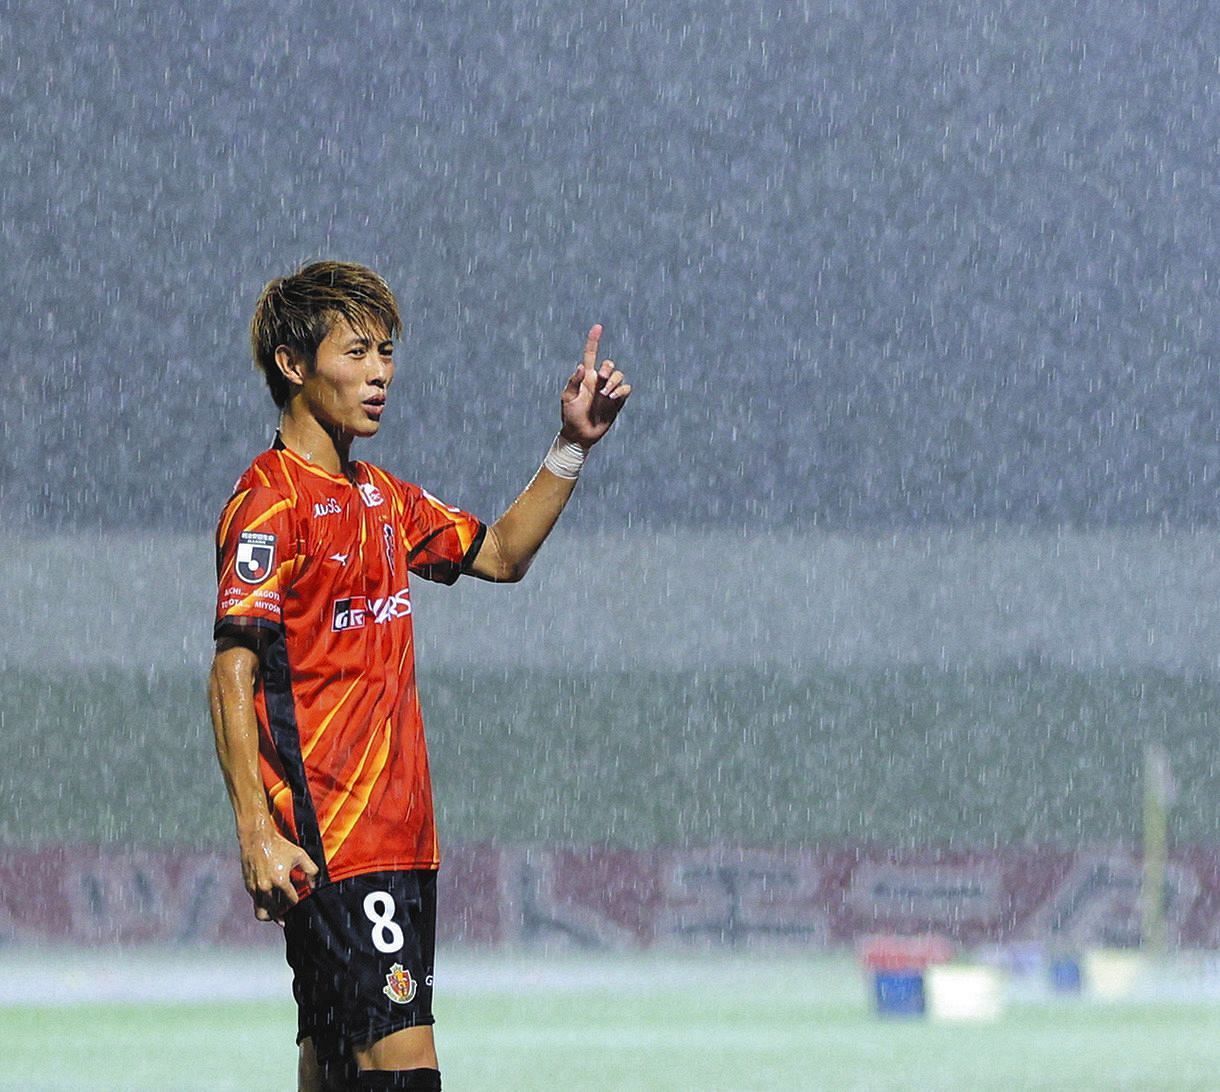 雷雨で試合が中断となり、稲妻が走る空を指さす名古屋・柿谷